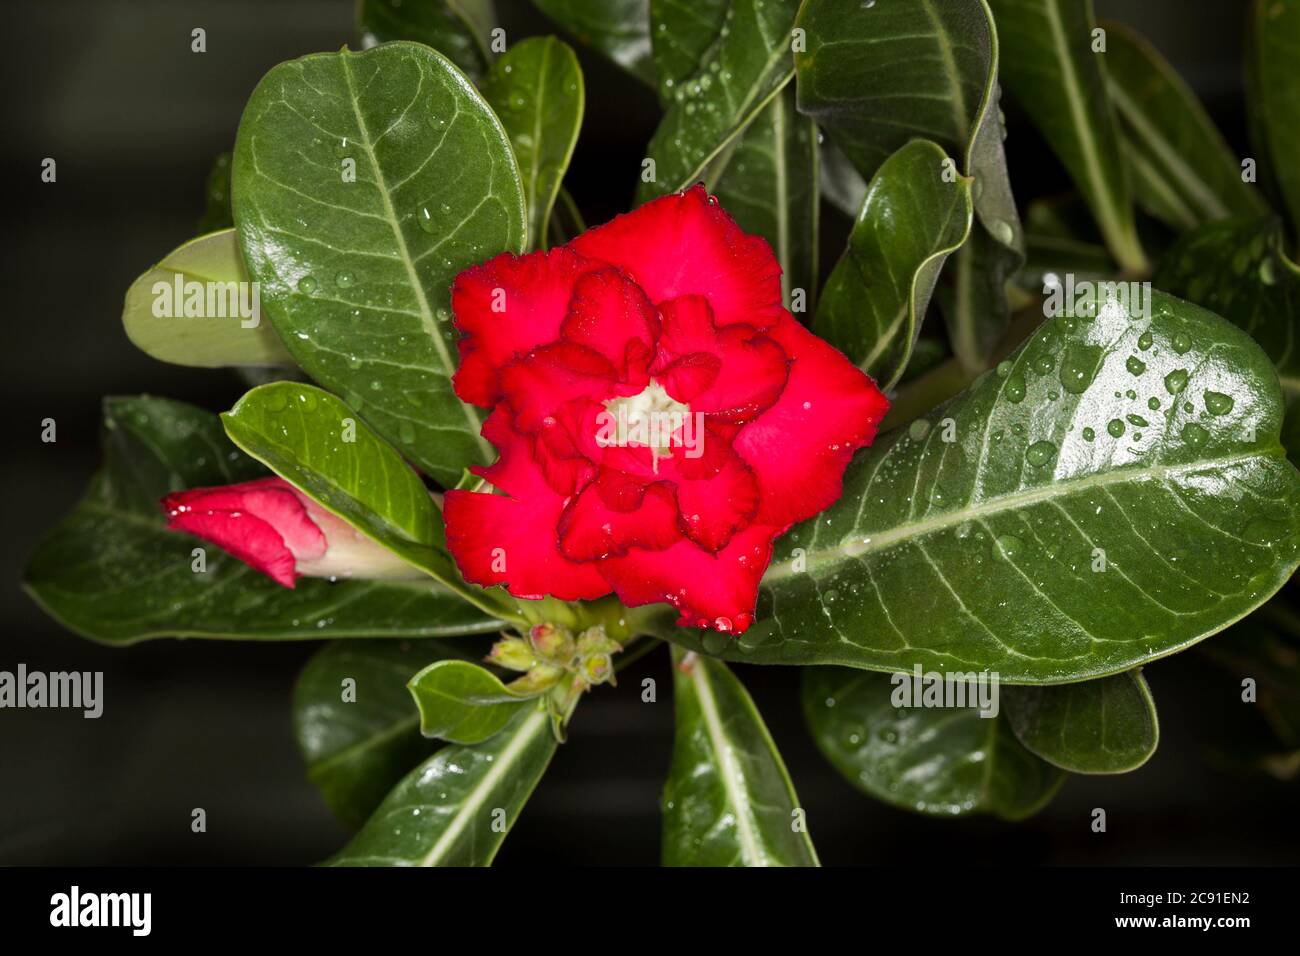 Doble flor roja brillante de planta suculenta tolerante a la sequía, Adenium obesum, Rosa del desierto, rodeada de hojas de color verde oscuro con gotas de lluvia Foto de stock